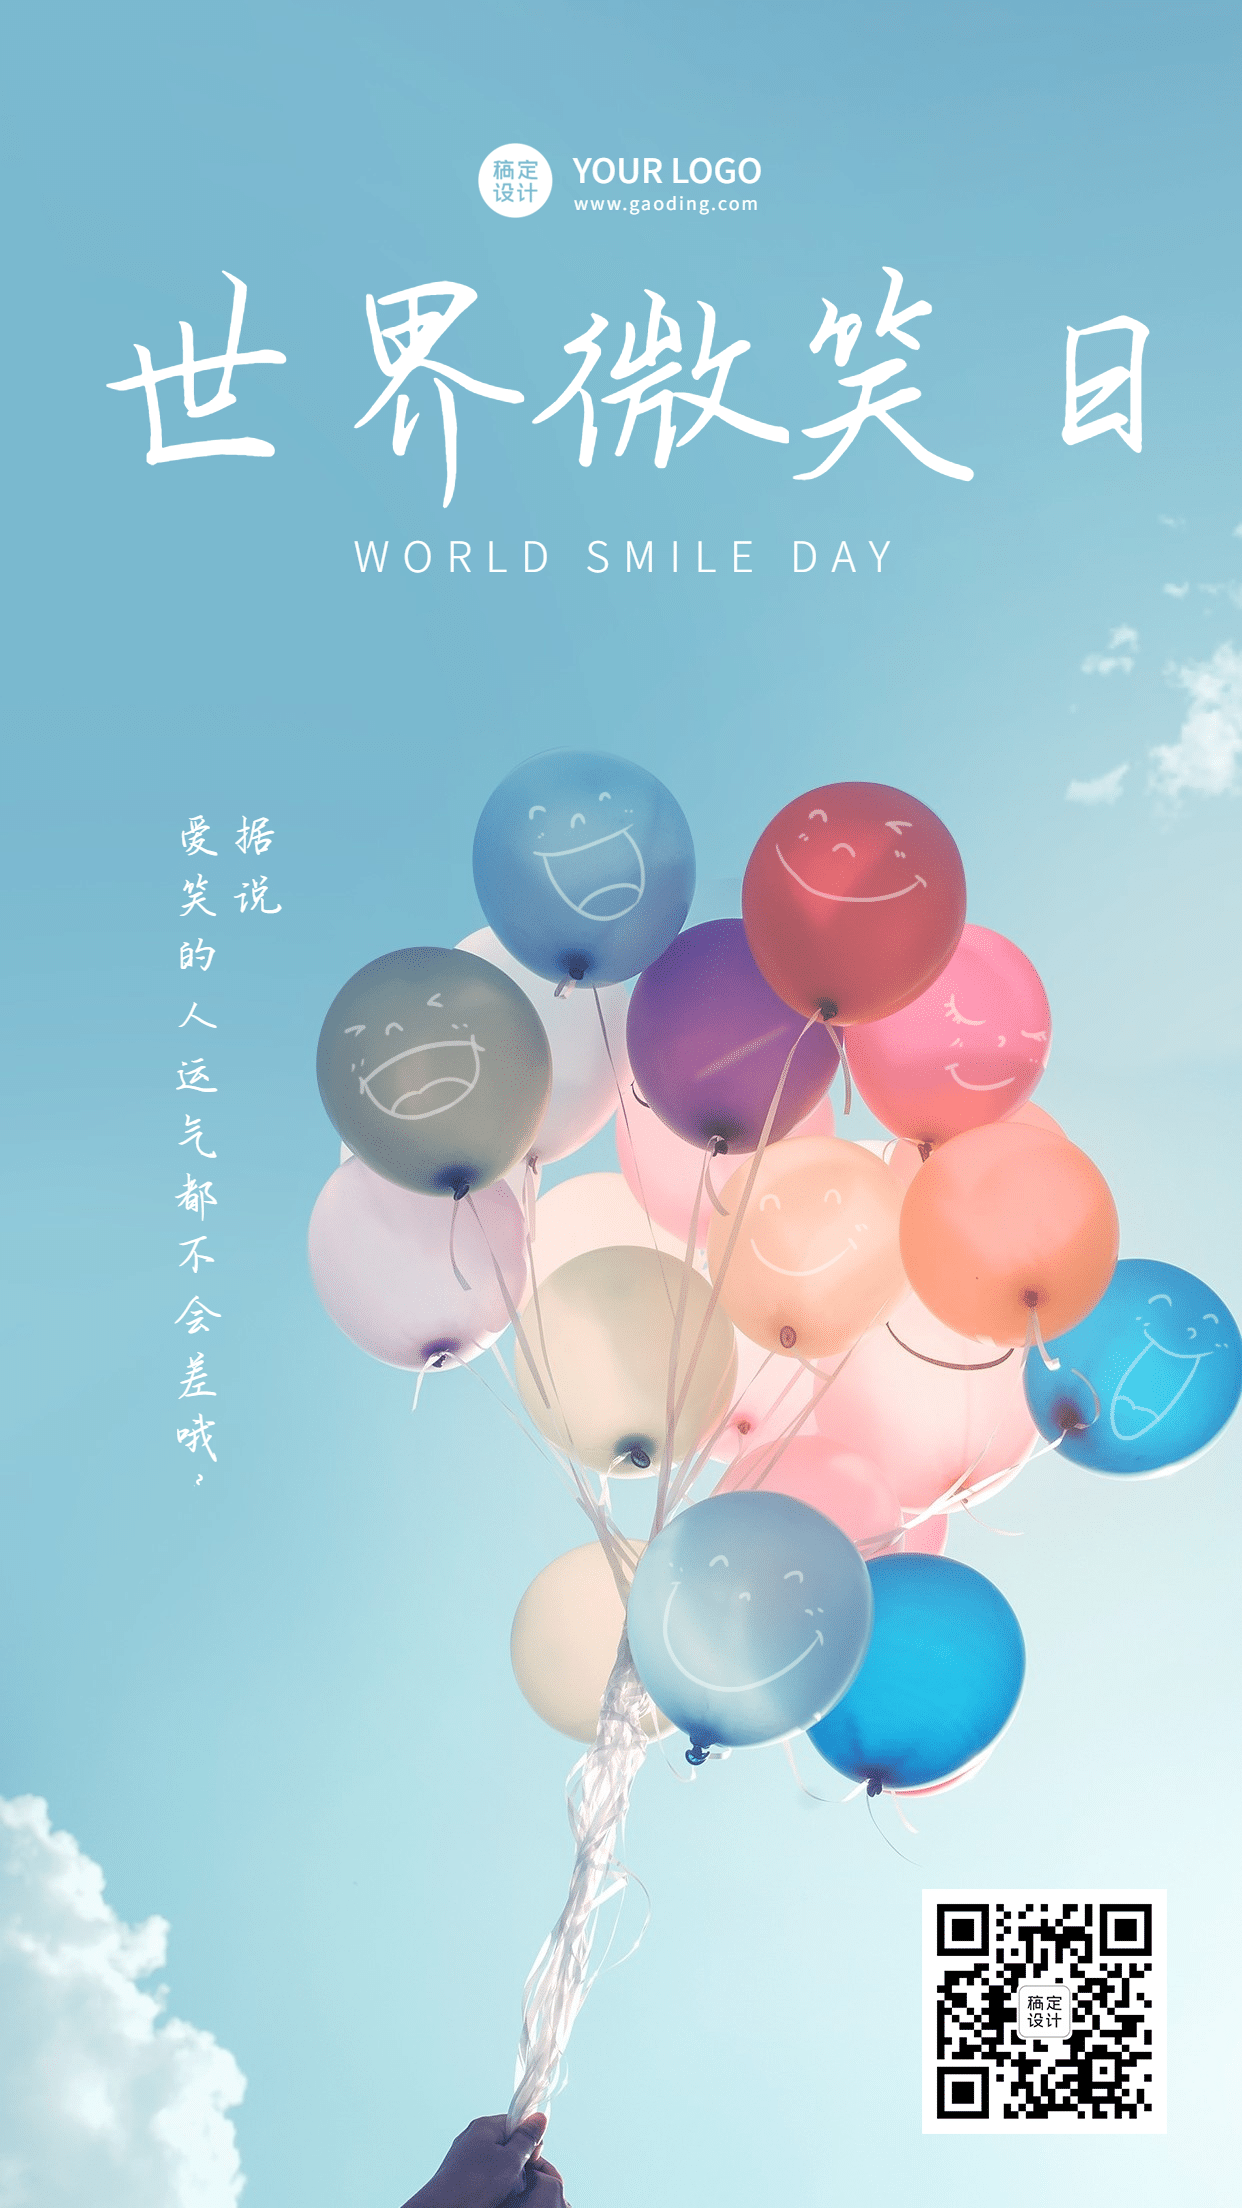 世界微笑日创意气球笑脸手机海报预览效果